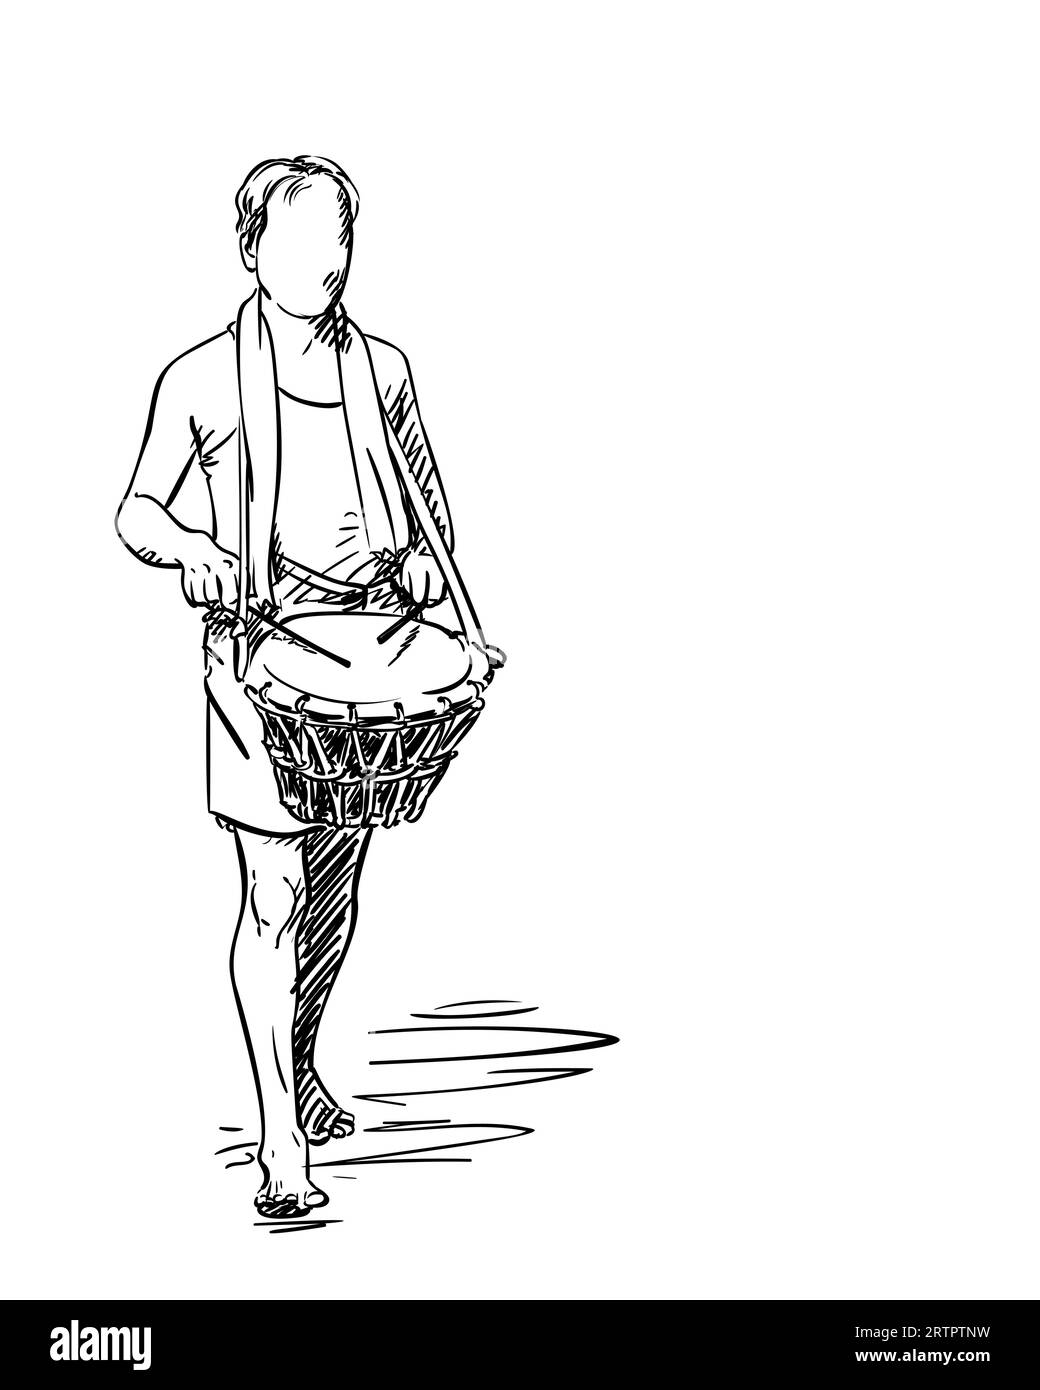 Tambour un homme de tambour marchant pieds nus, dessin d'une personne sans visage jouant un instrument de musique à percussion, Vector esquisse simple, illustration dessinée à la main Illustration de Vecteur